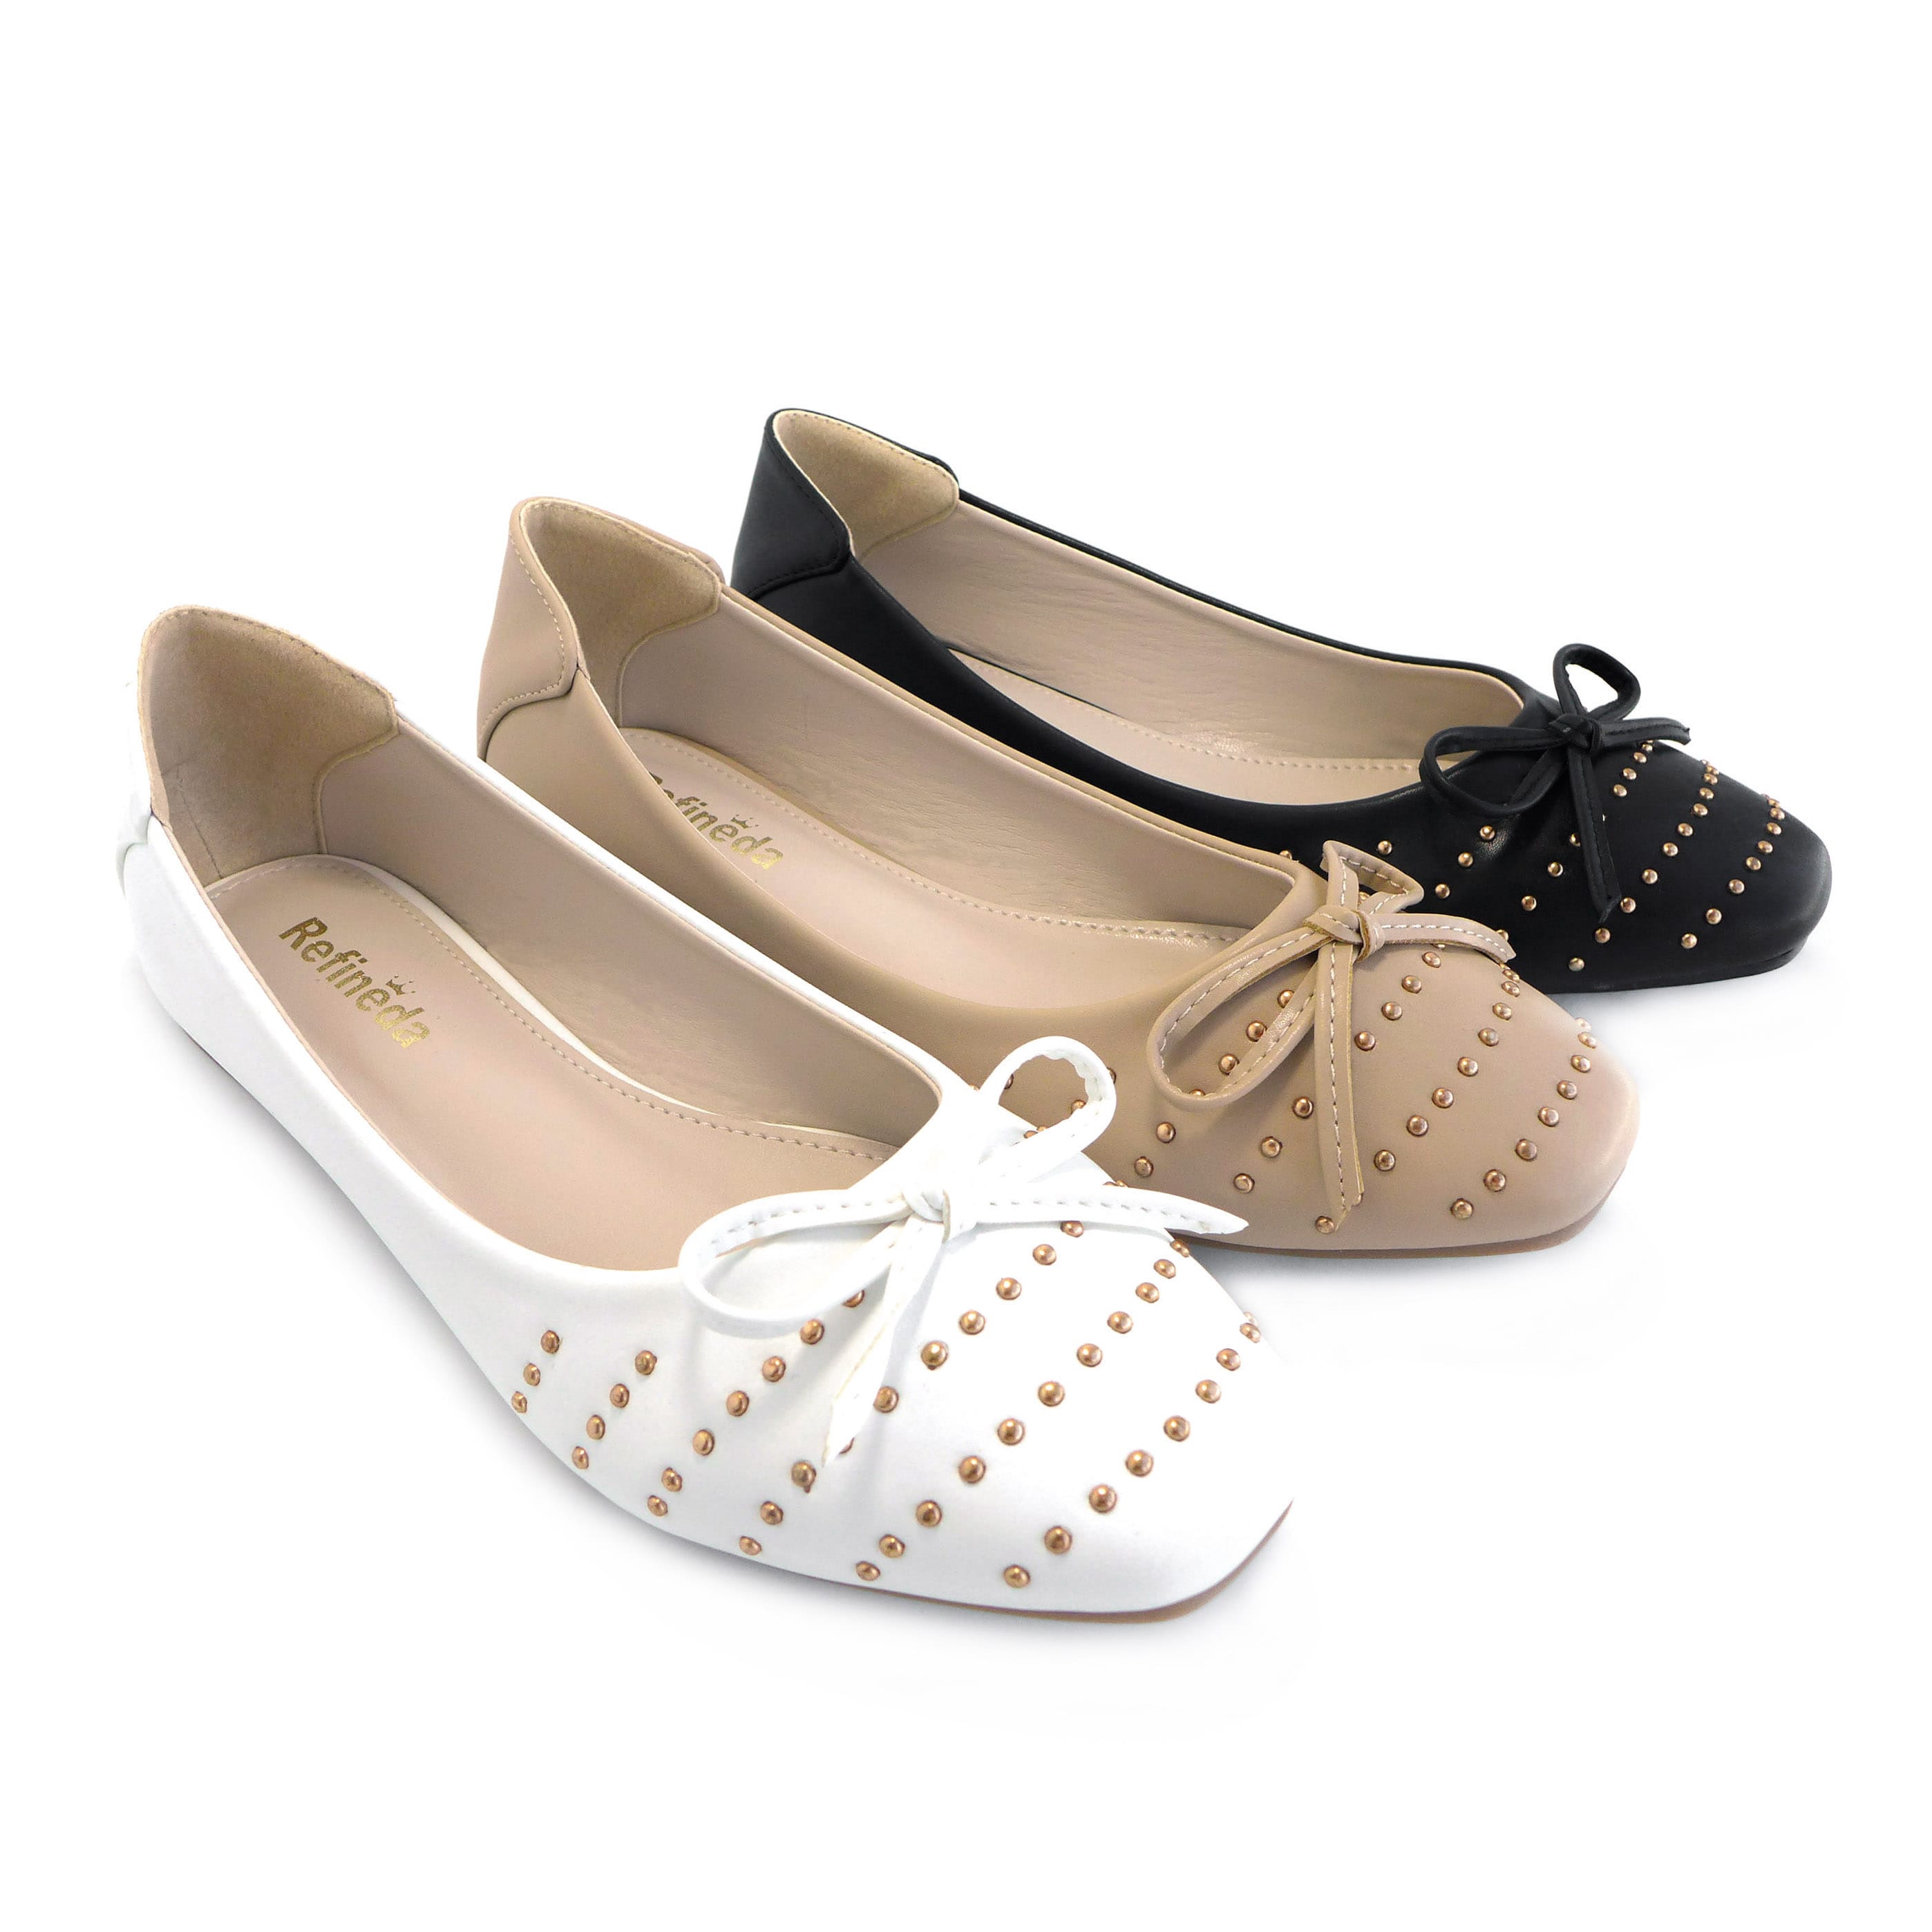 Women’s Sole-Simple Ballerina Walking Flats Shoes